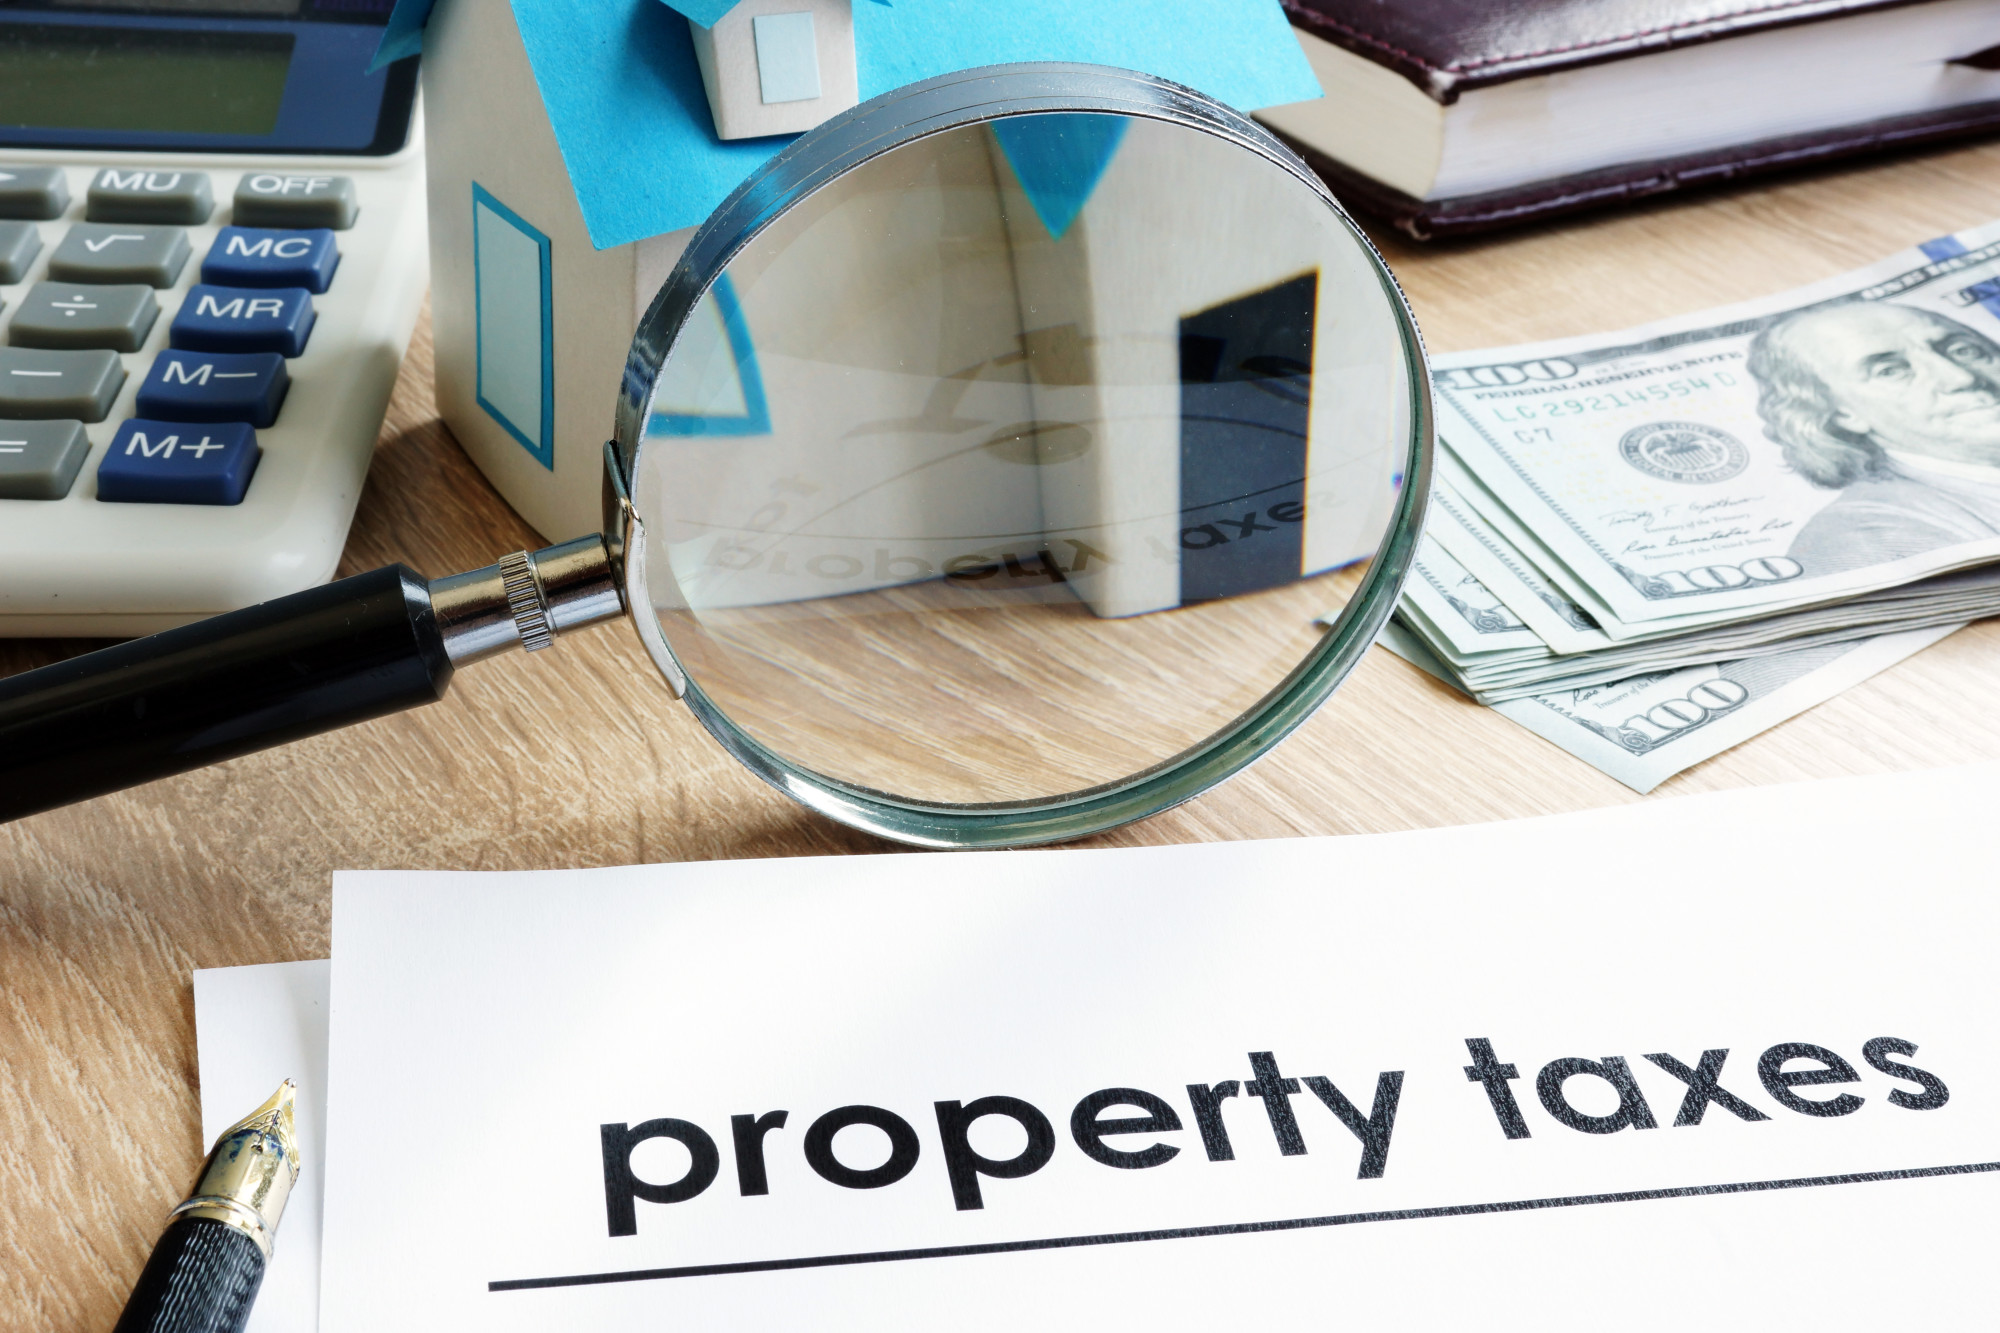 How Do North Carolina Property Taxes Work?